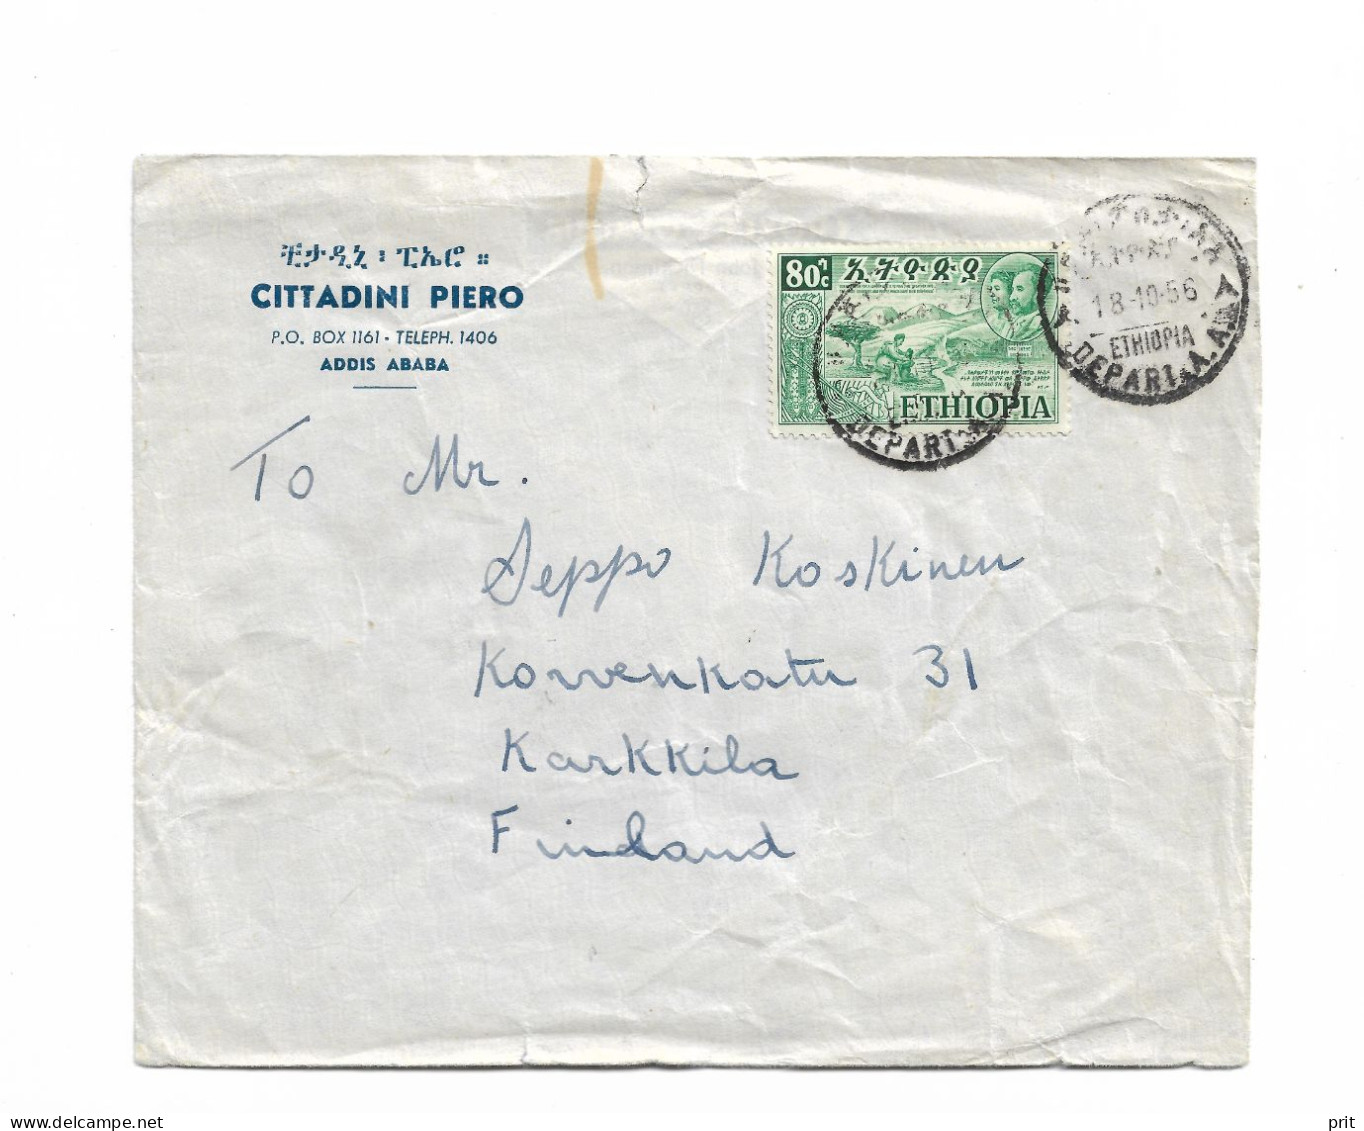 Addis Ababa Ethiopia Cover To Karkkila, Finland 1956 - Etiopia